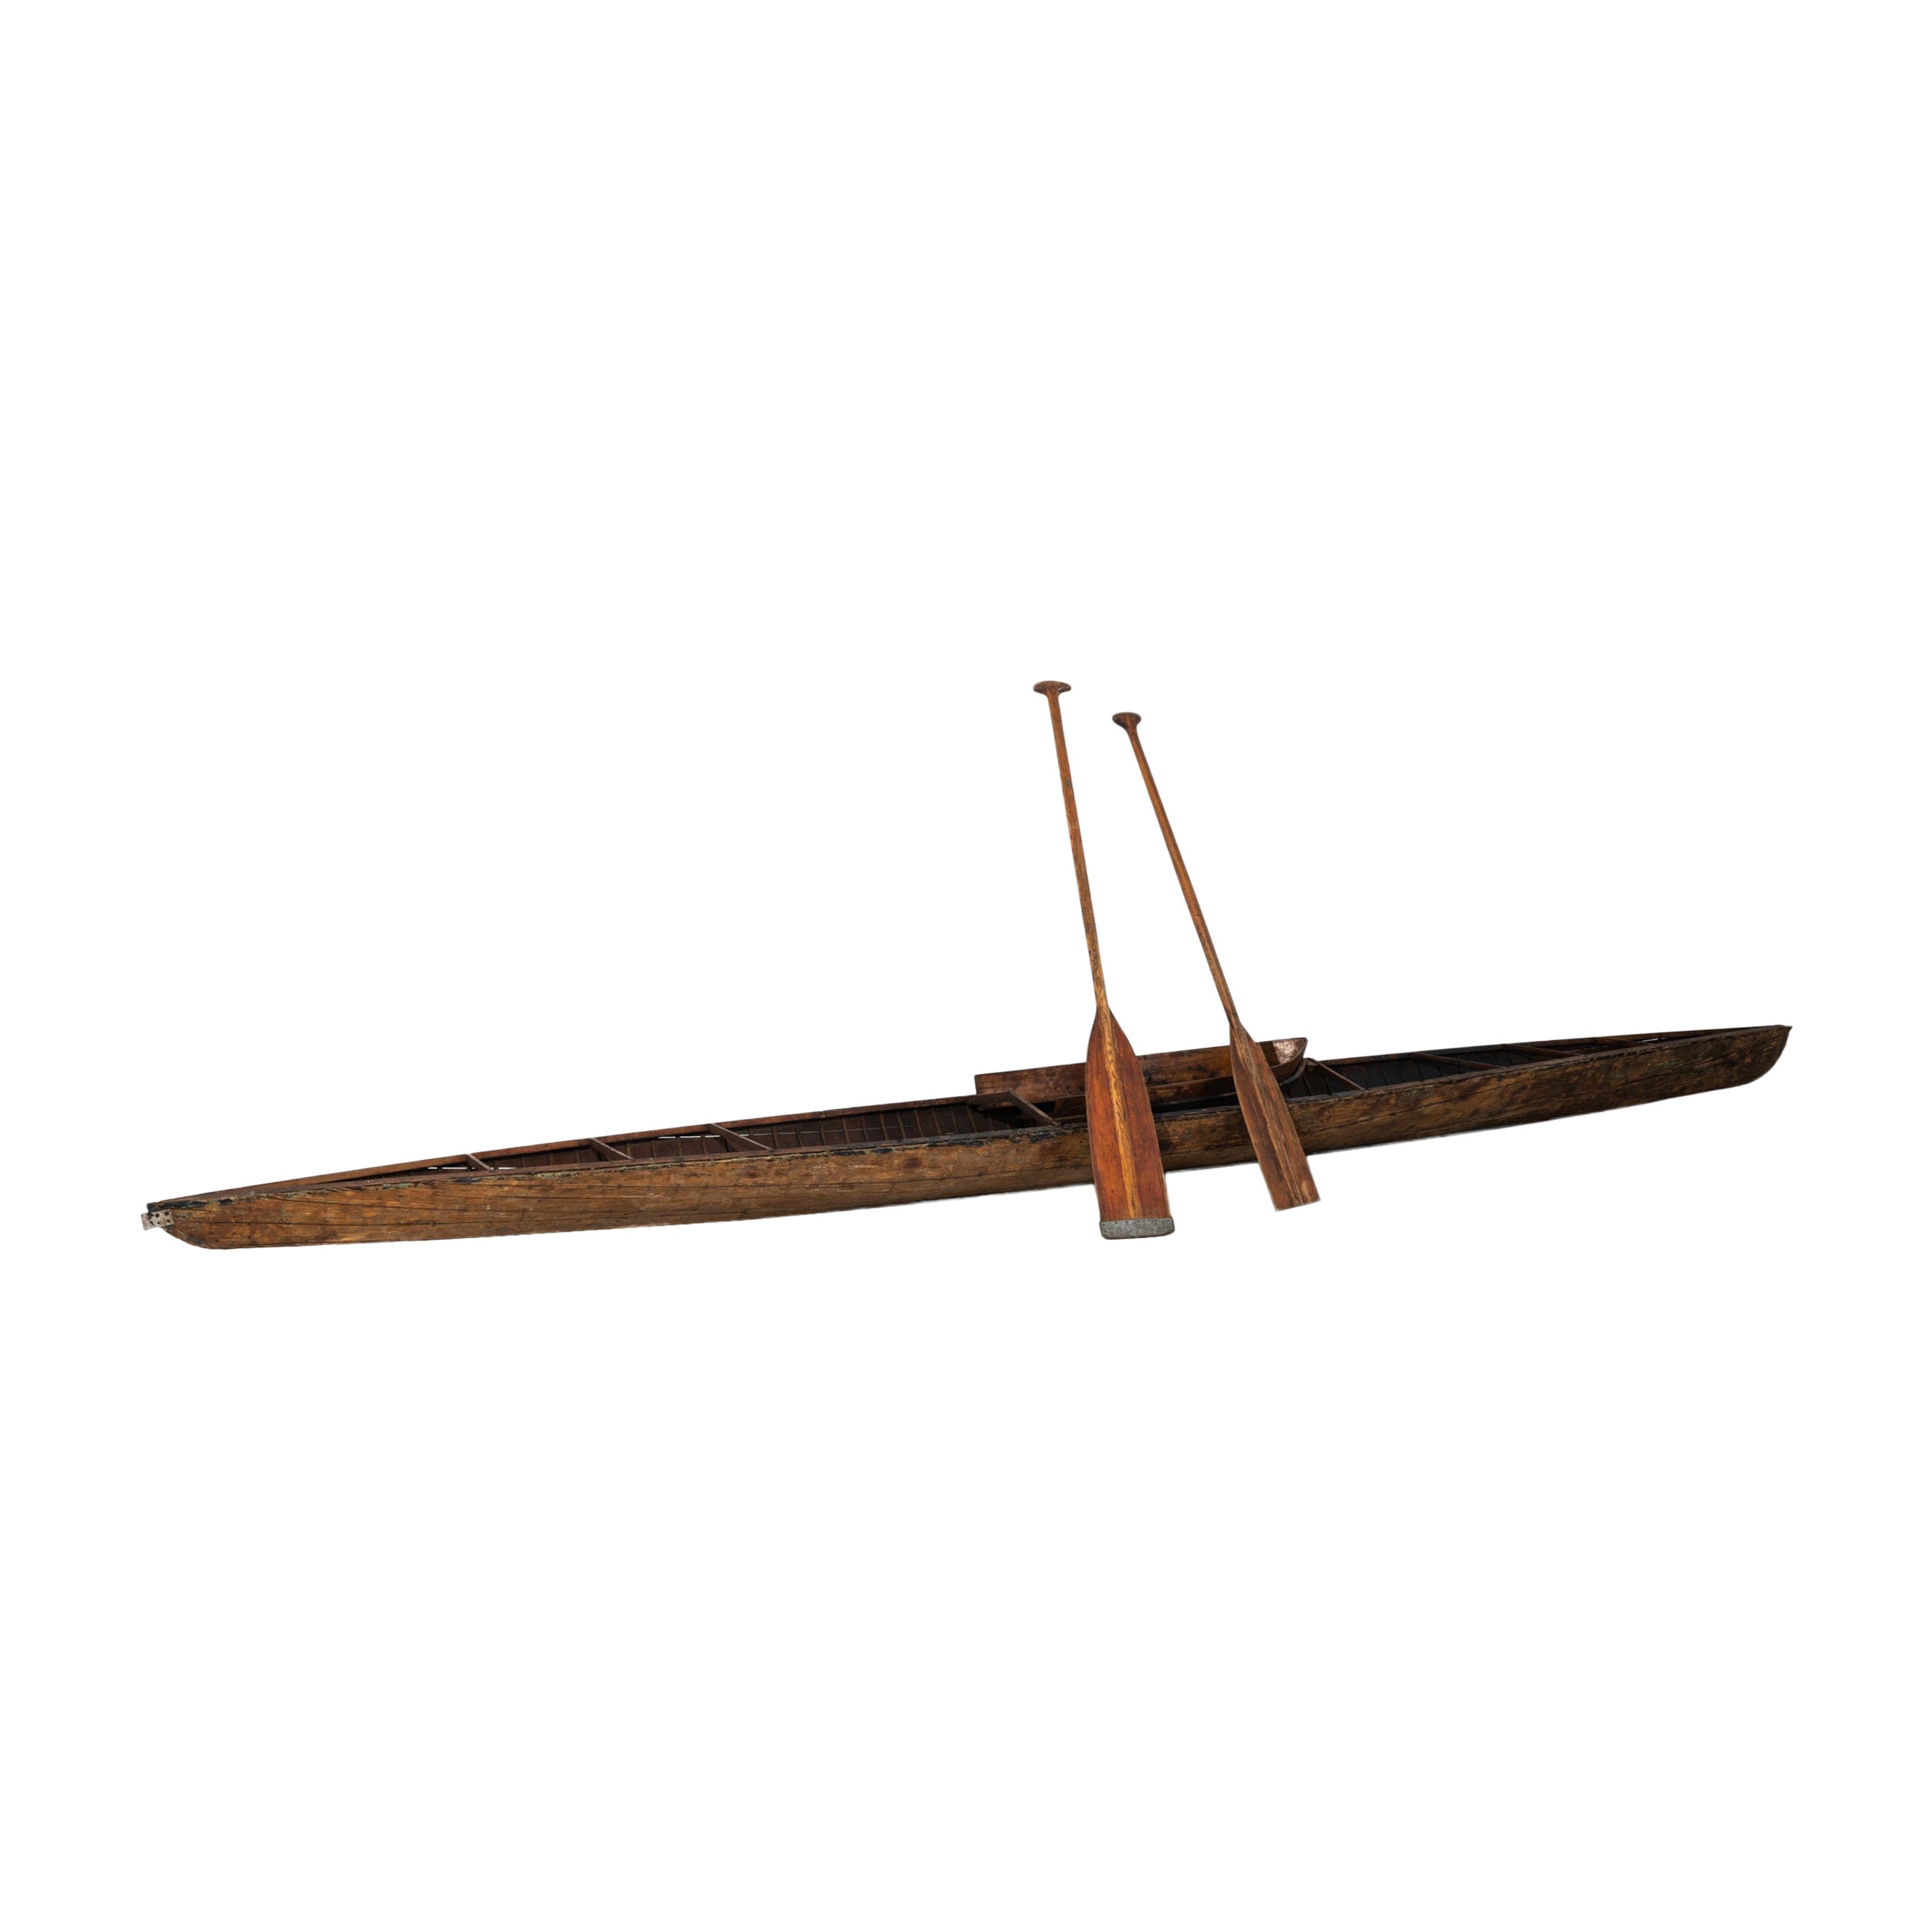 Early 20th Century, European Wooden Kayak